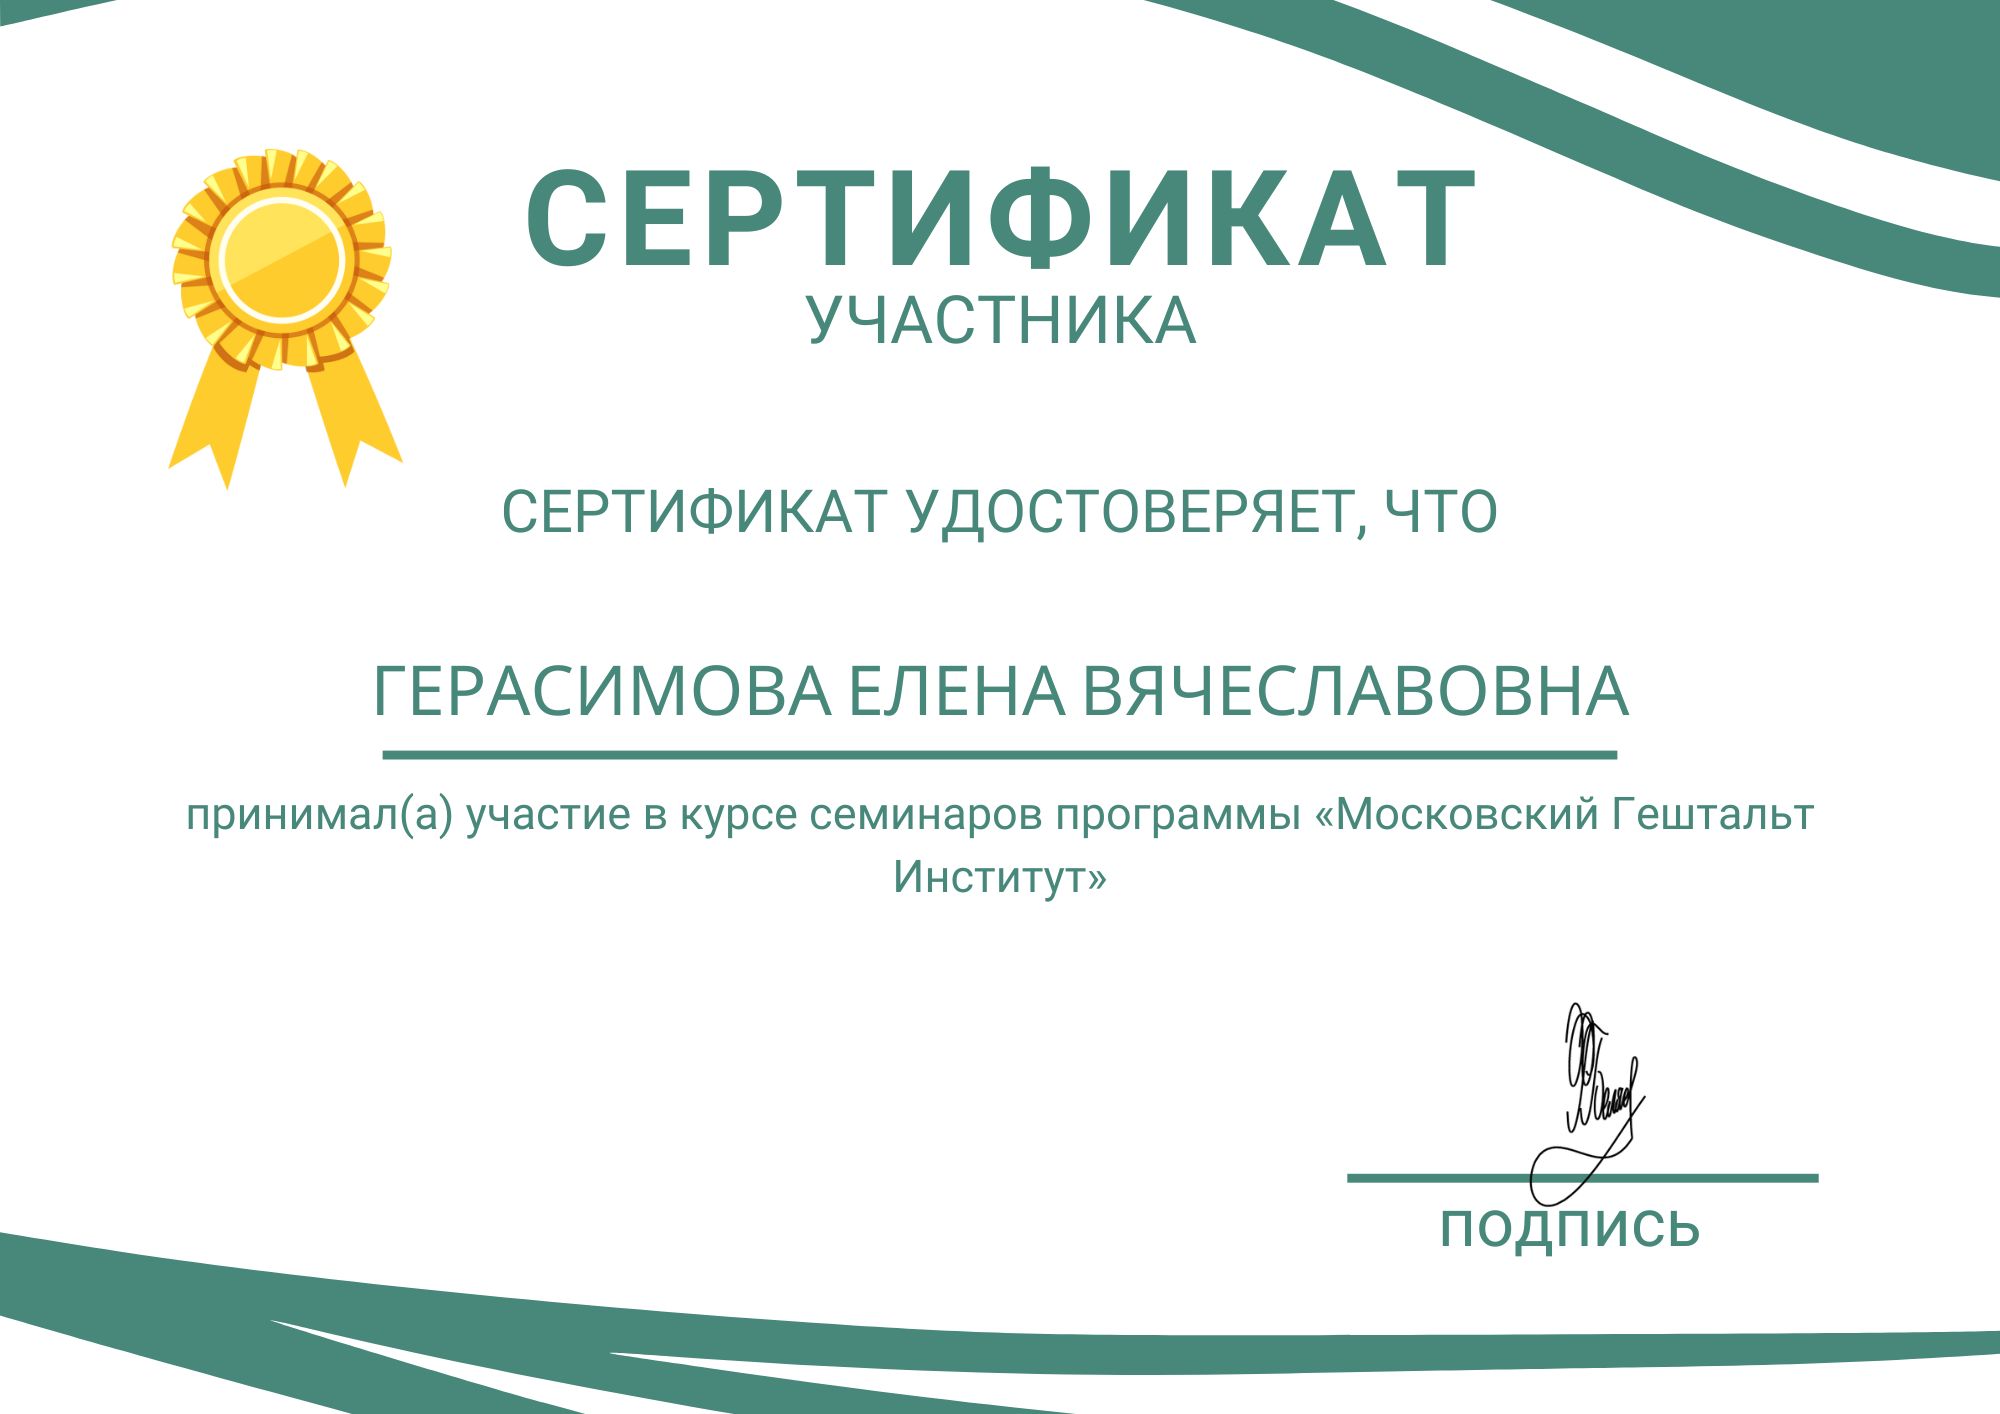 Фотография сертификата Герасимовой Елены Вячеславовны за участия в курсе